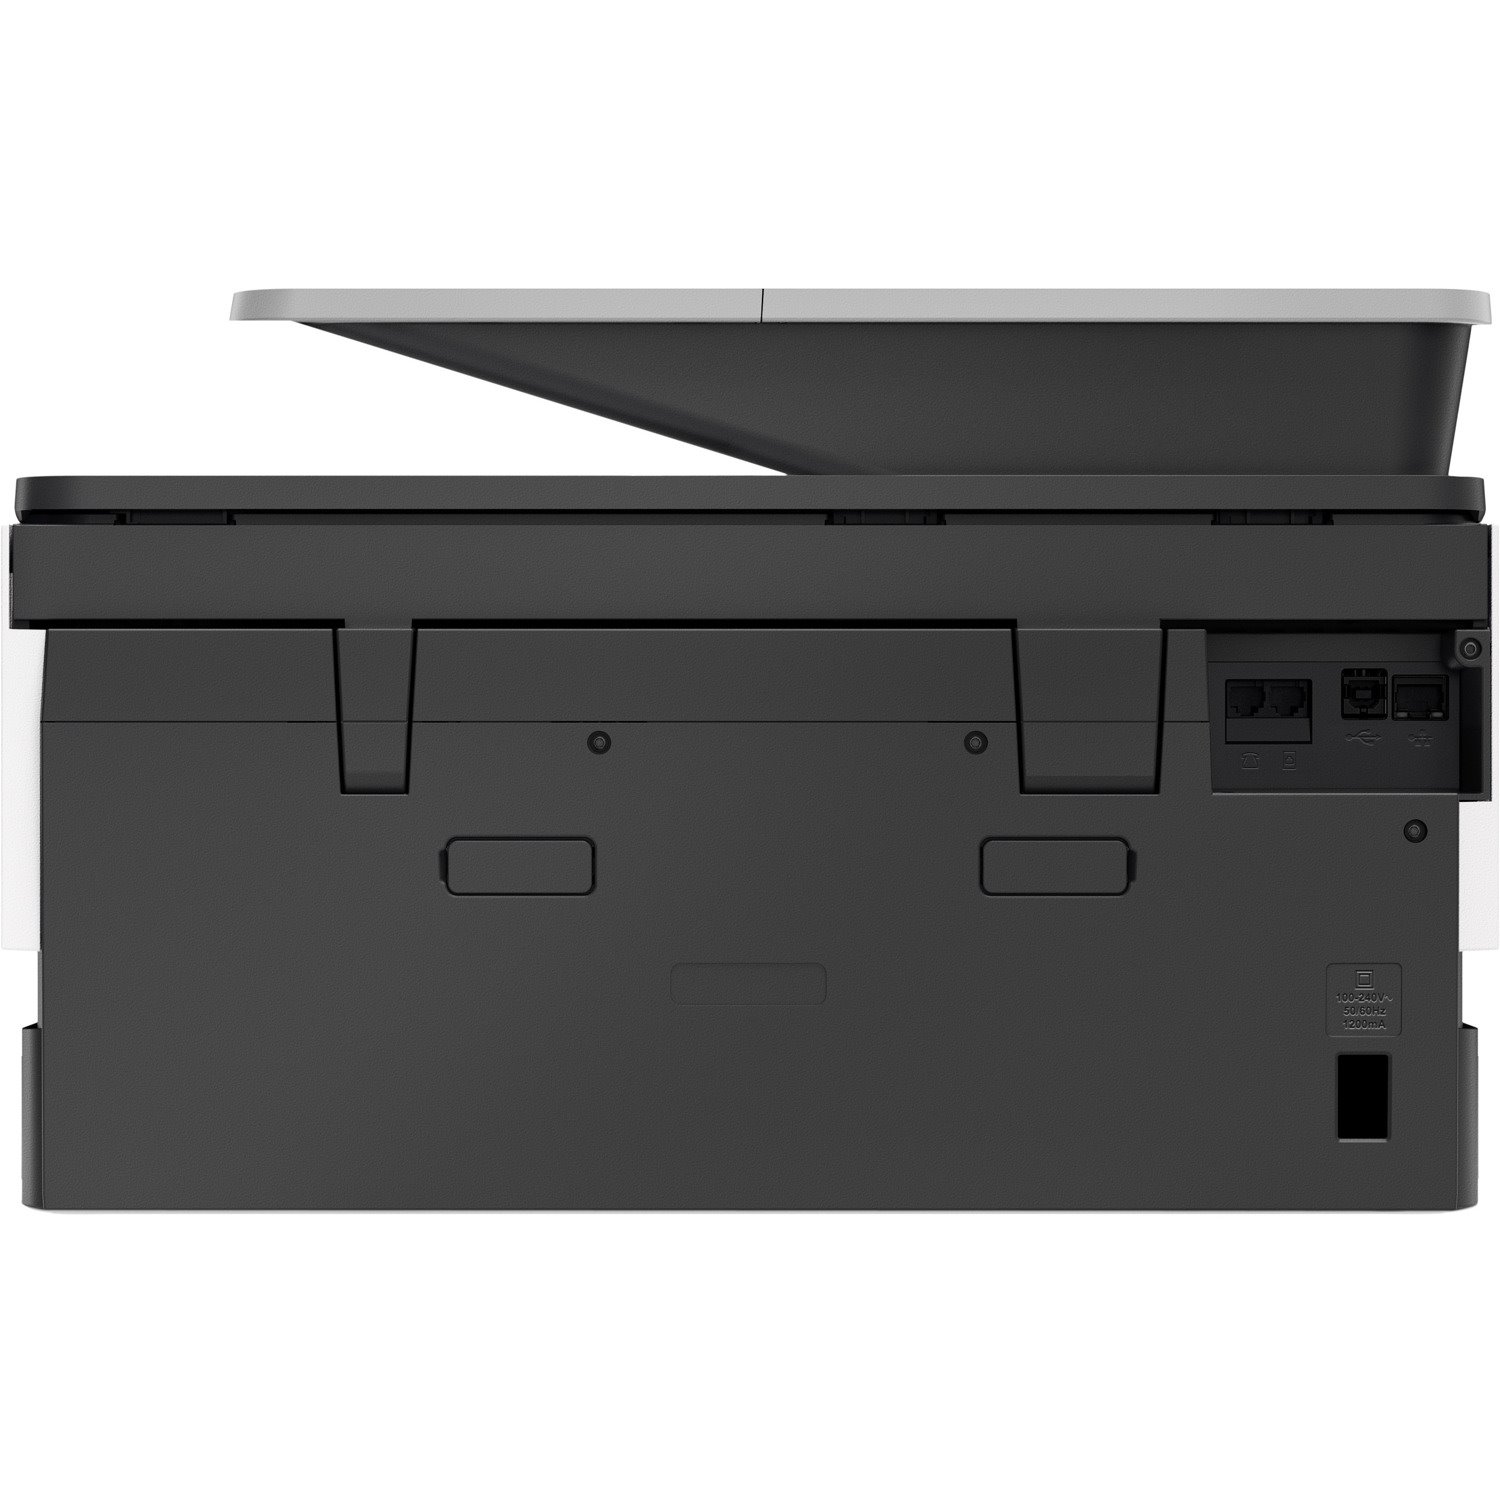 HP Officejet Pro 9010 Wireless Inkjet Multifunction Printer - Colour